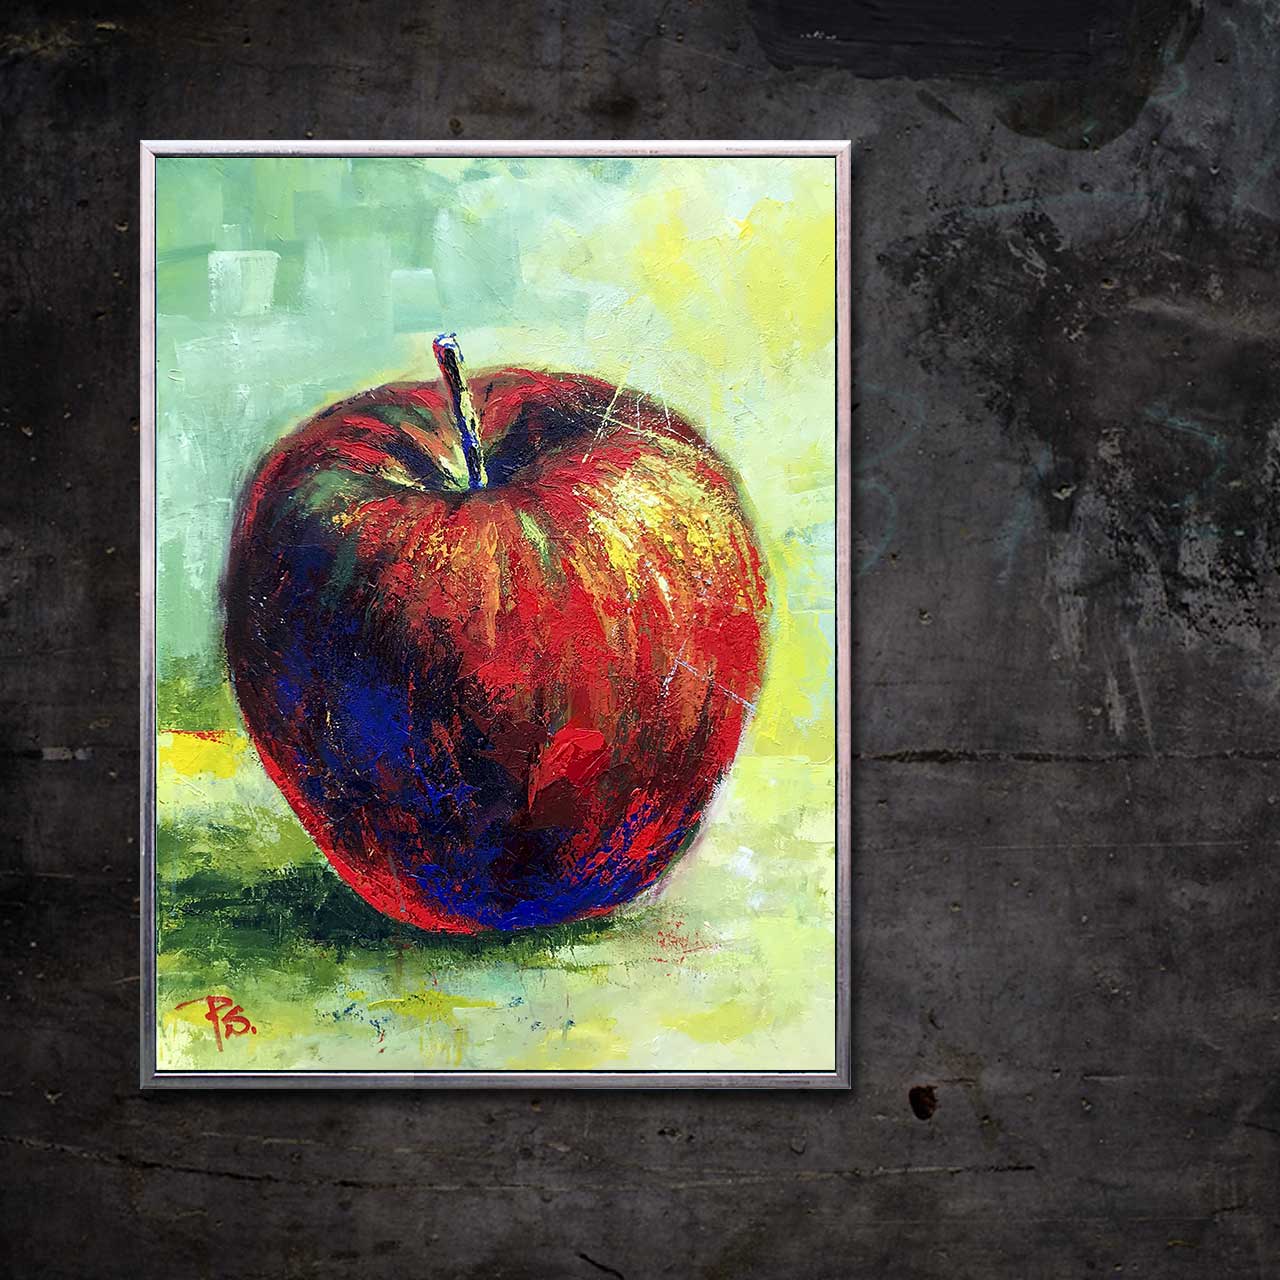 Rødt æble med blå stilk 02 - malet af Peter Simonsen. Akryl og pastel på lærred. Format: 60 x 80 cm